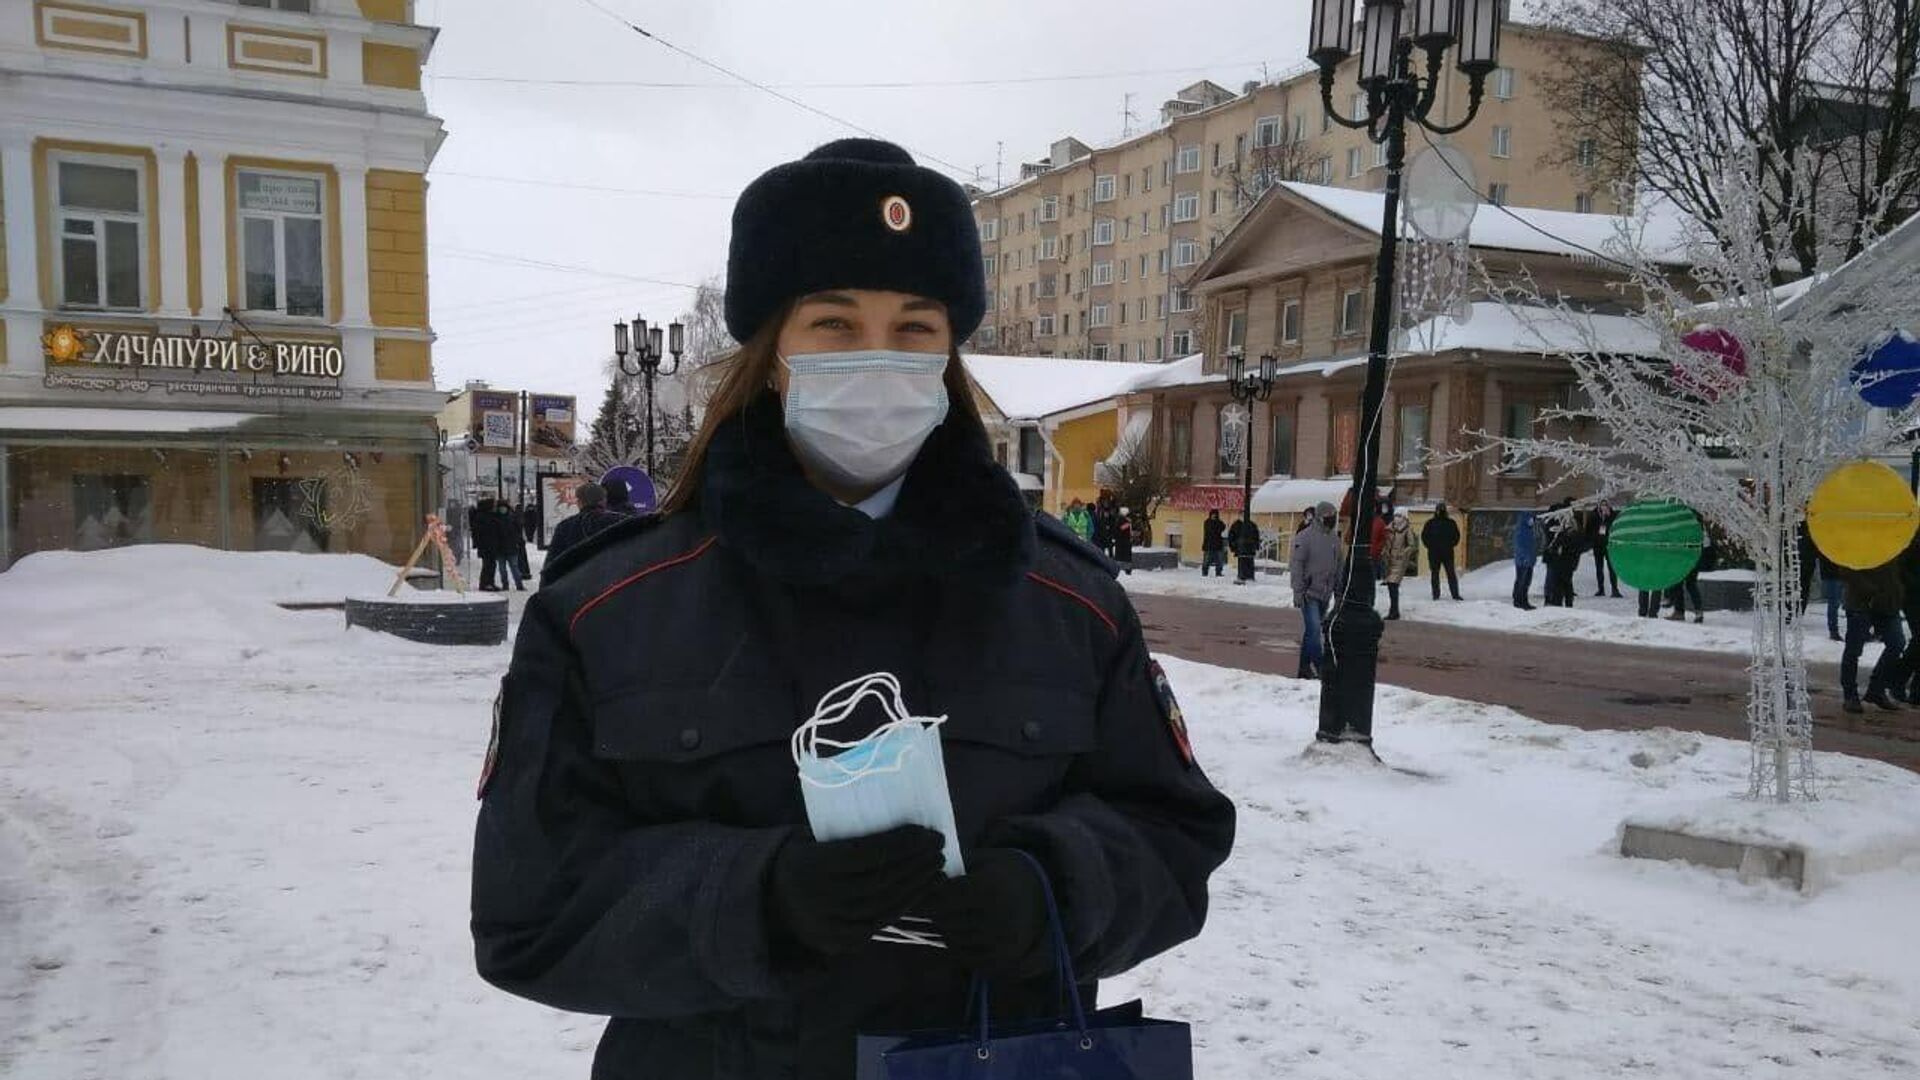 Сотрудницы полиции раздают маски пришедшим на несогласованную акцию в Нижнем Новгороде - РИА Новости, 1920, 31.01.2021